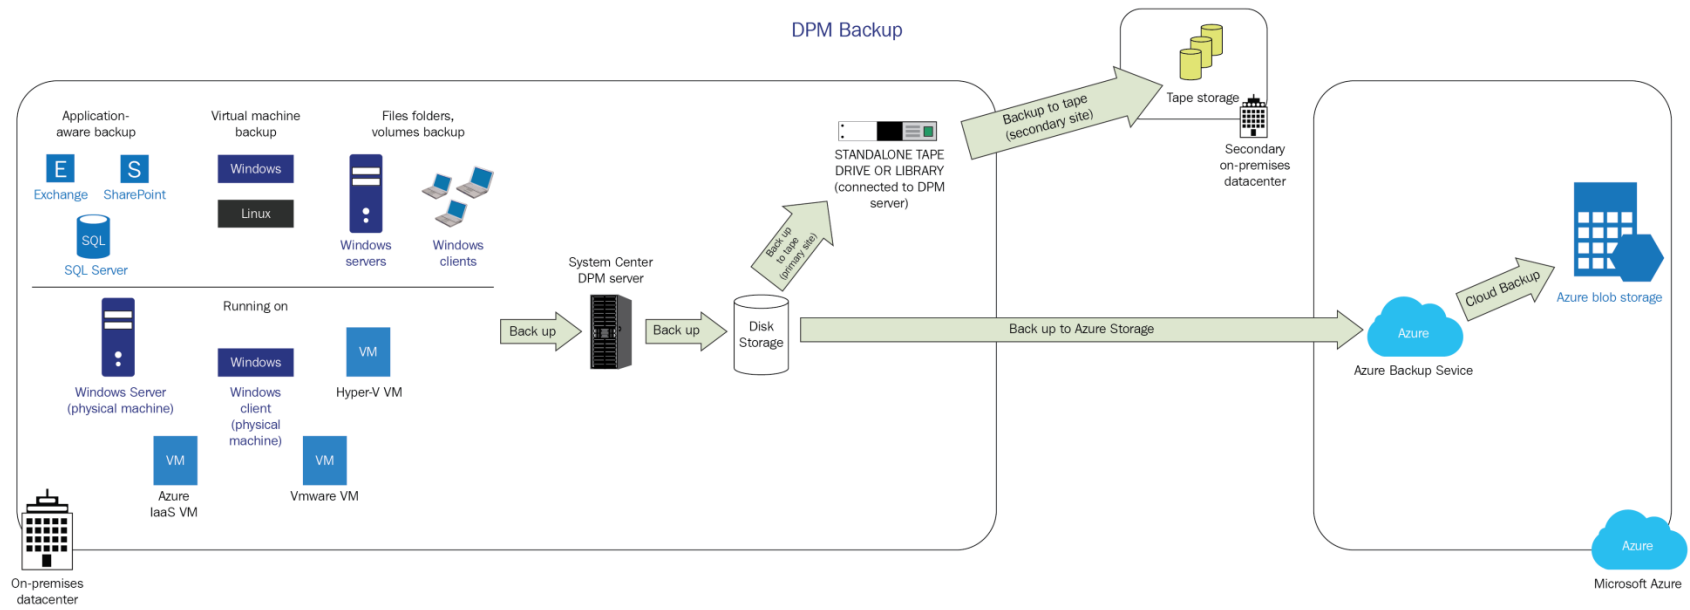 Diagrama do fluxo de trabalho de backup do DPM.